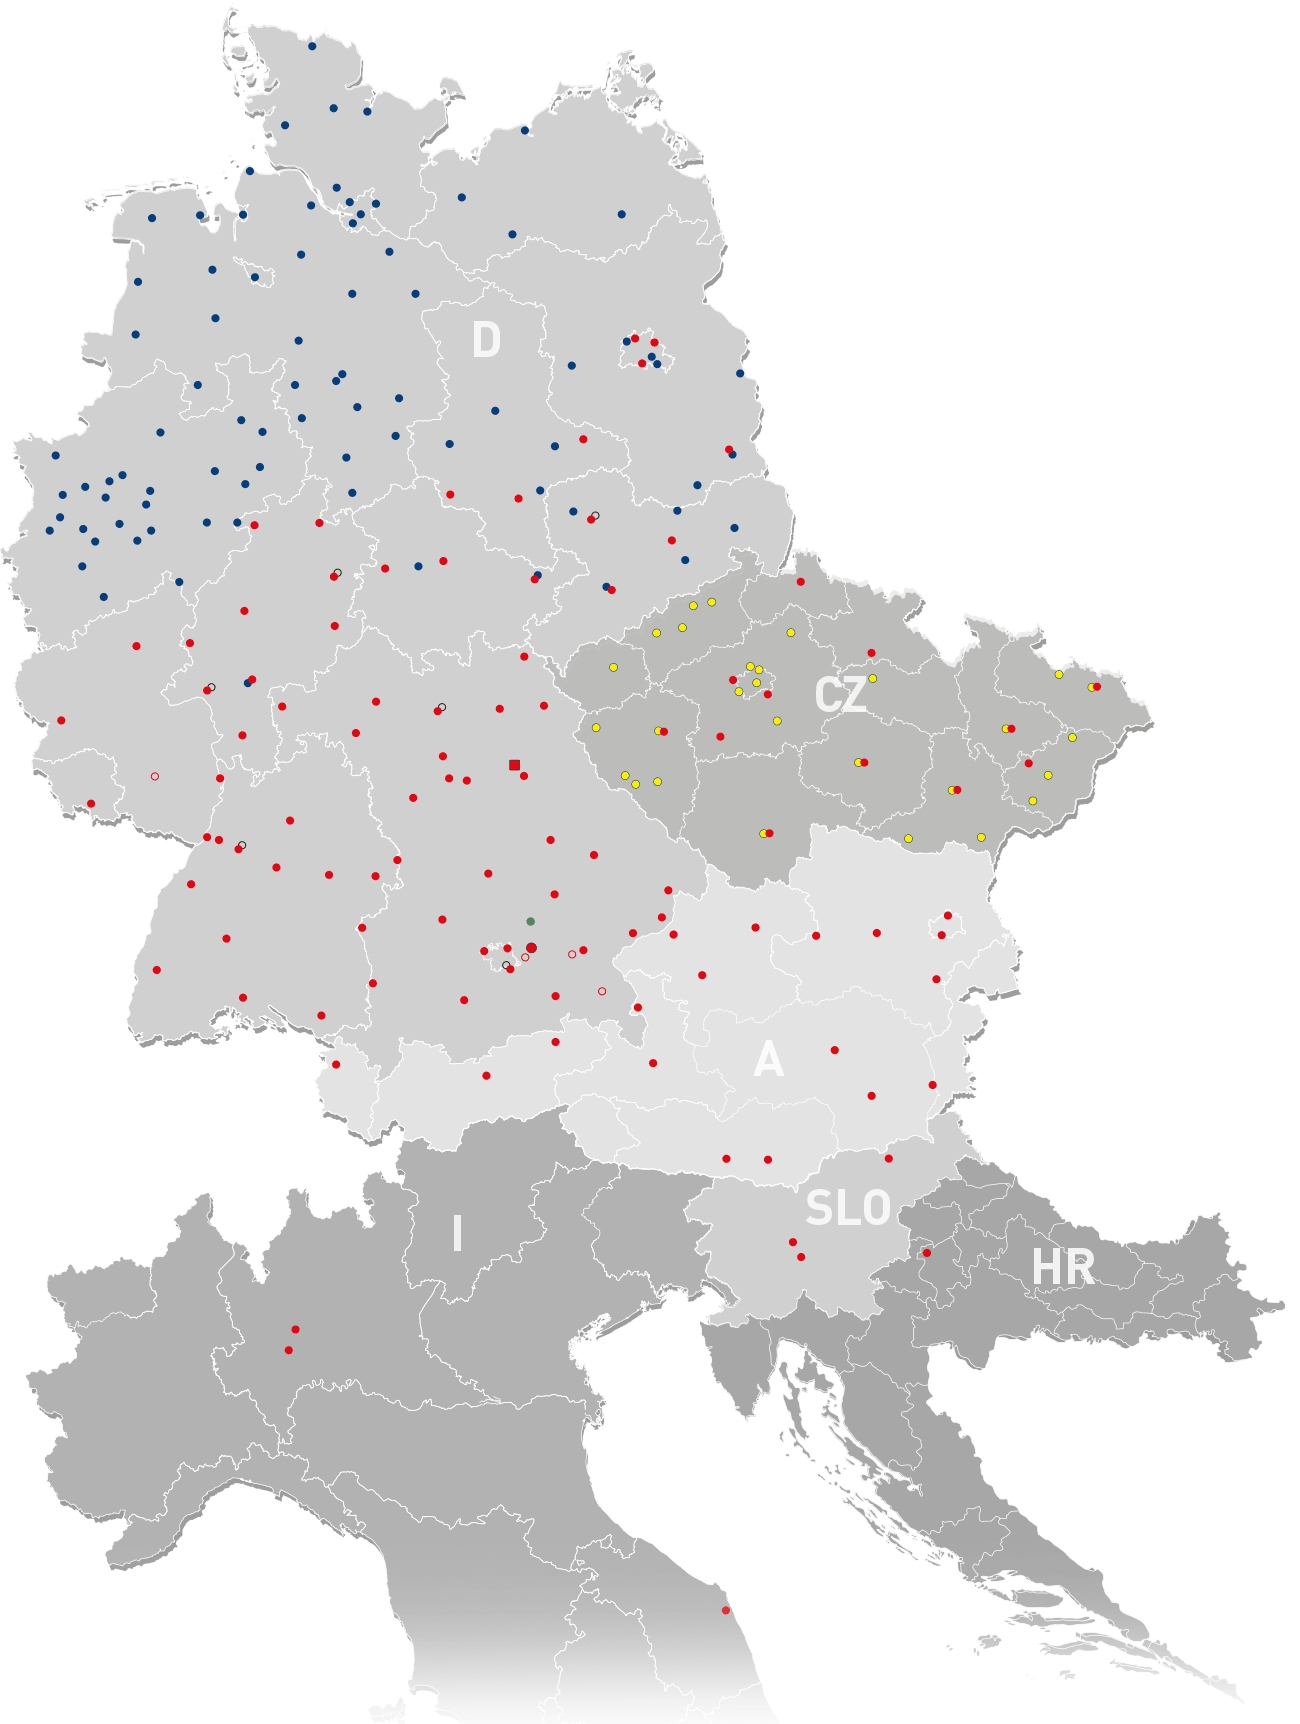 Filiales, adhérents, centres logistiques, centres techniques: Stahlgruber couvre l’Allemagne, l'Autriche et quelques pays Est-européens limitrophes de belle manière..